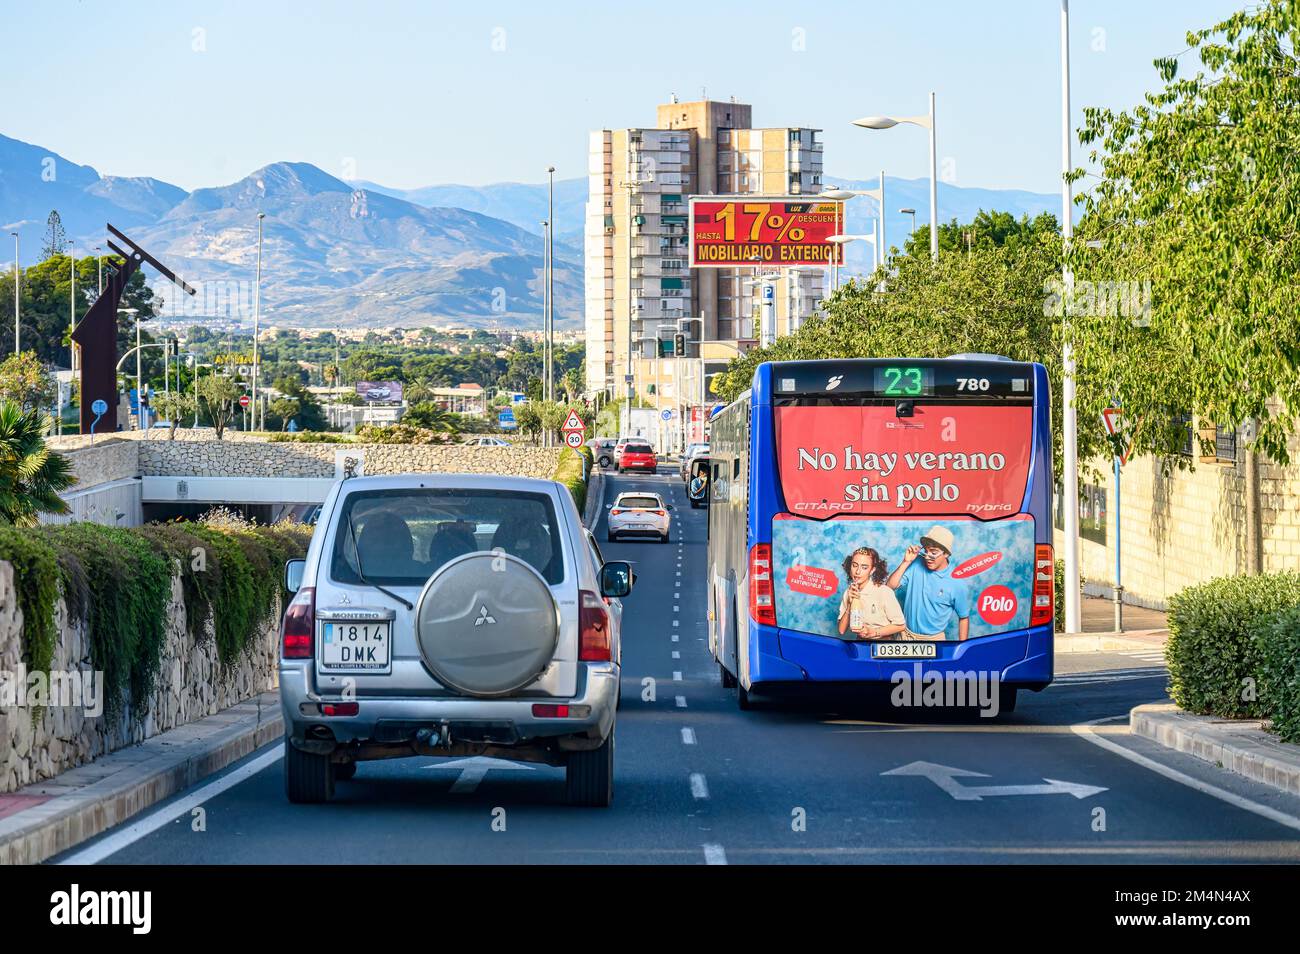 Un coche conduce junto al autobús de la ruta 23. El vehículo de pasajeros pertenece al sistema de transporte público de la ciudad de Alicante. Foto de stock